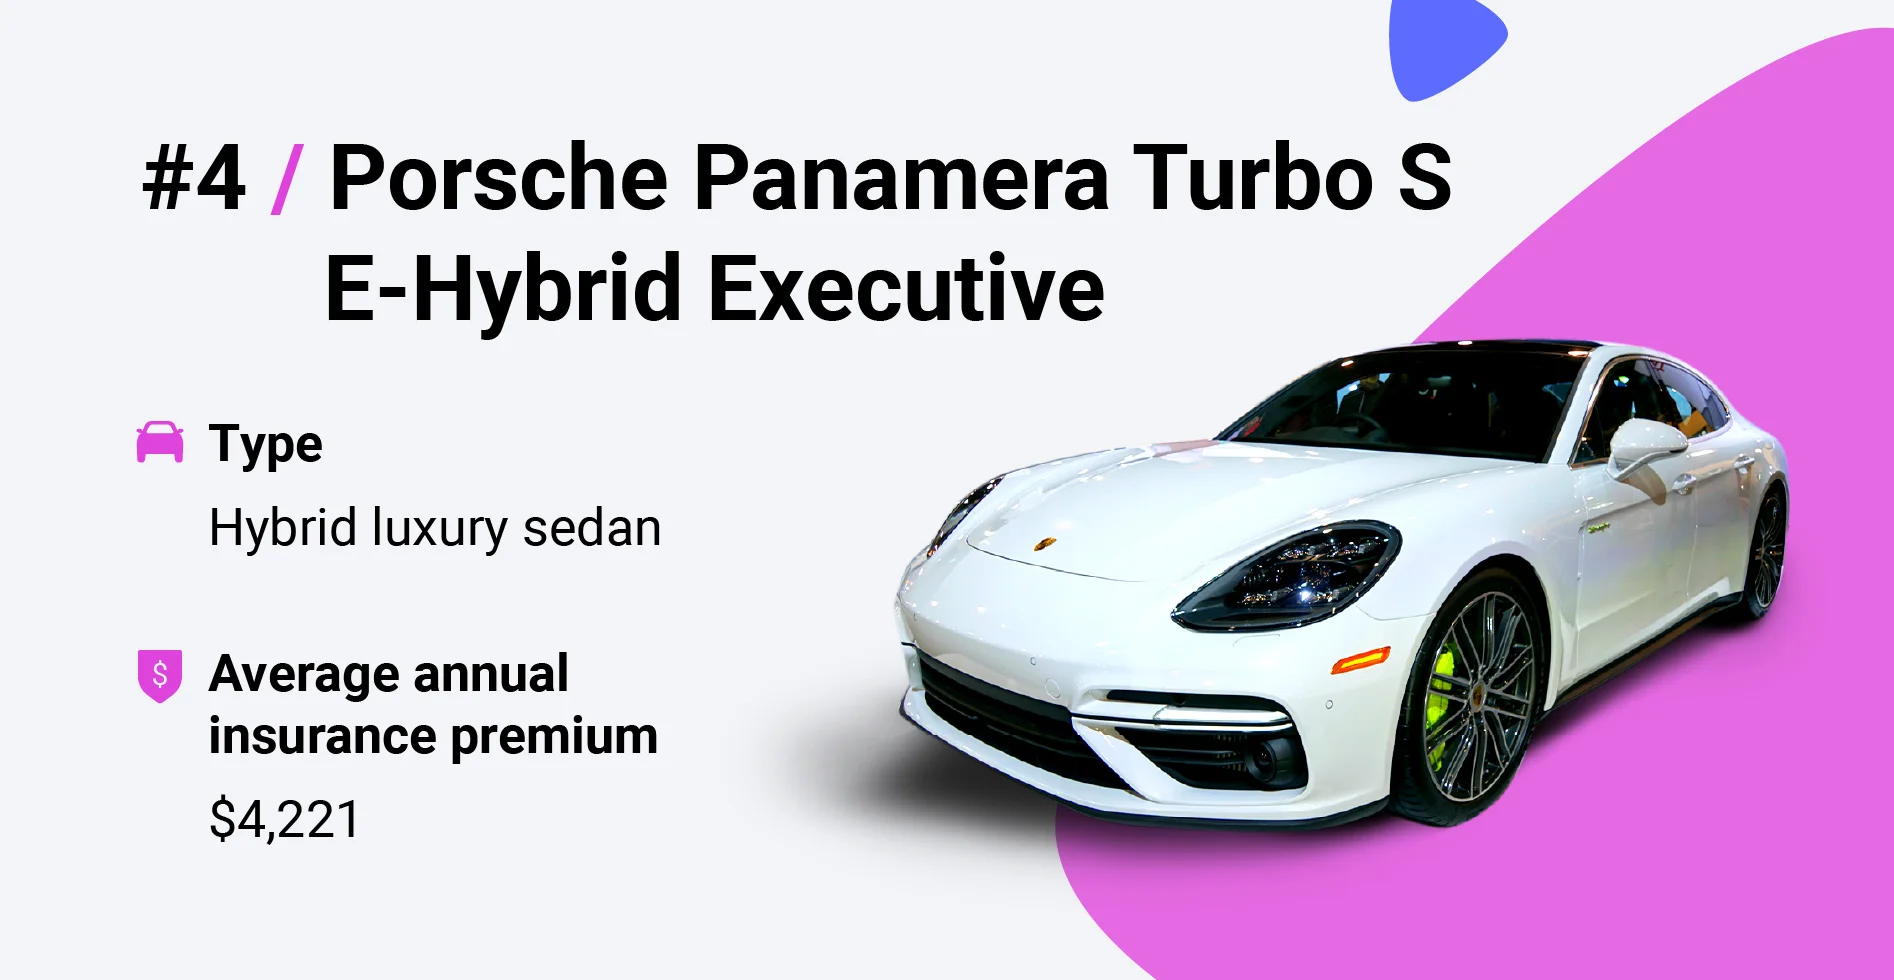 prosche panamera turbo s e-hybrid executive insurance cost